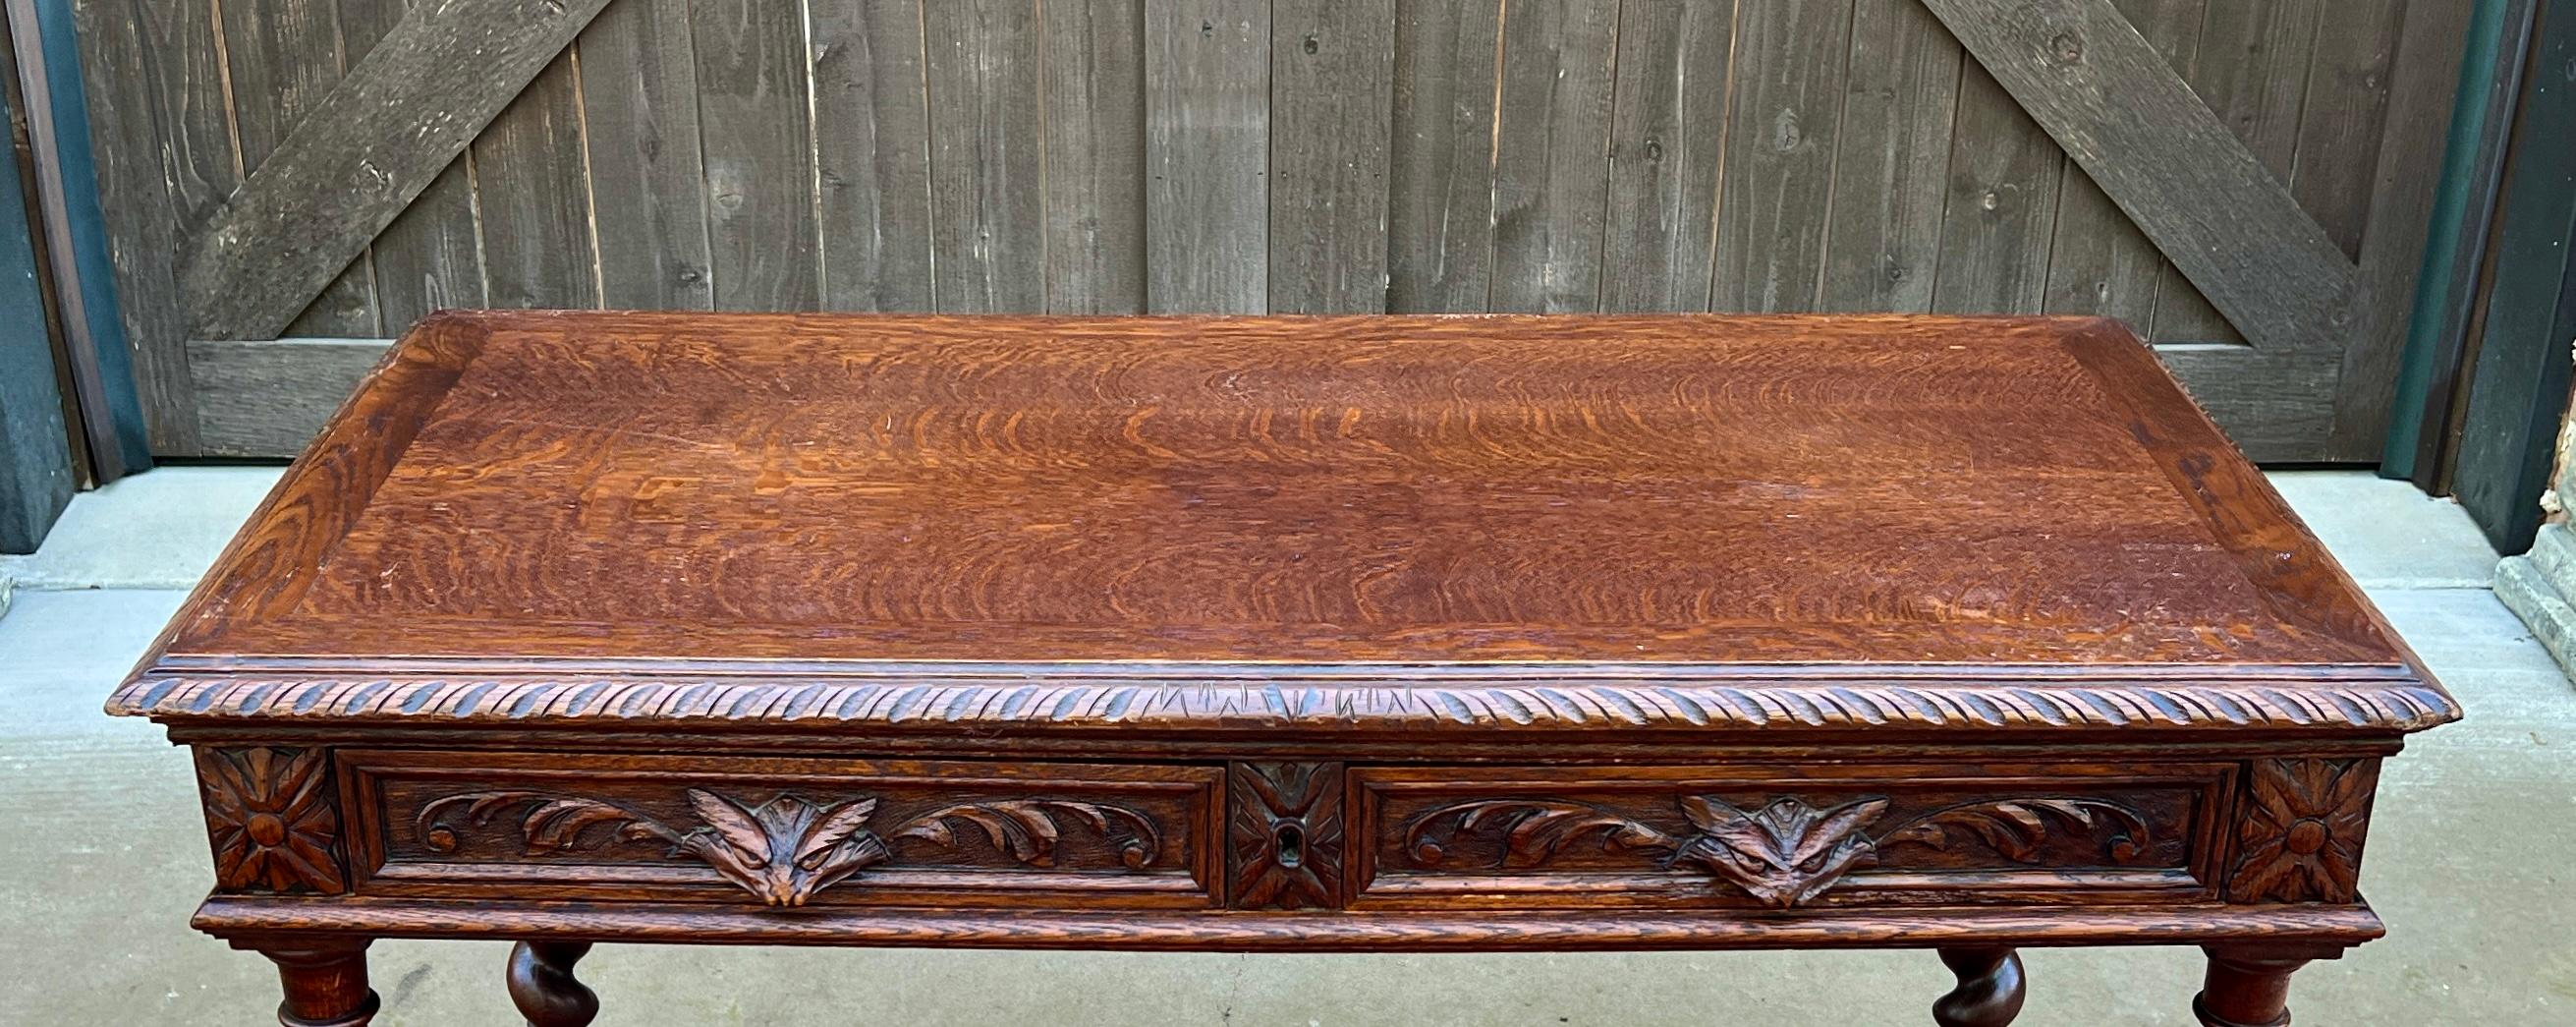 Antique French Desk Table Renaissance Revival Barley Twist Carved Tiger Oak 19C For Sale 7